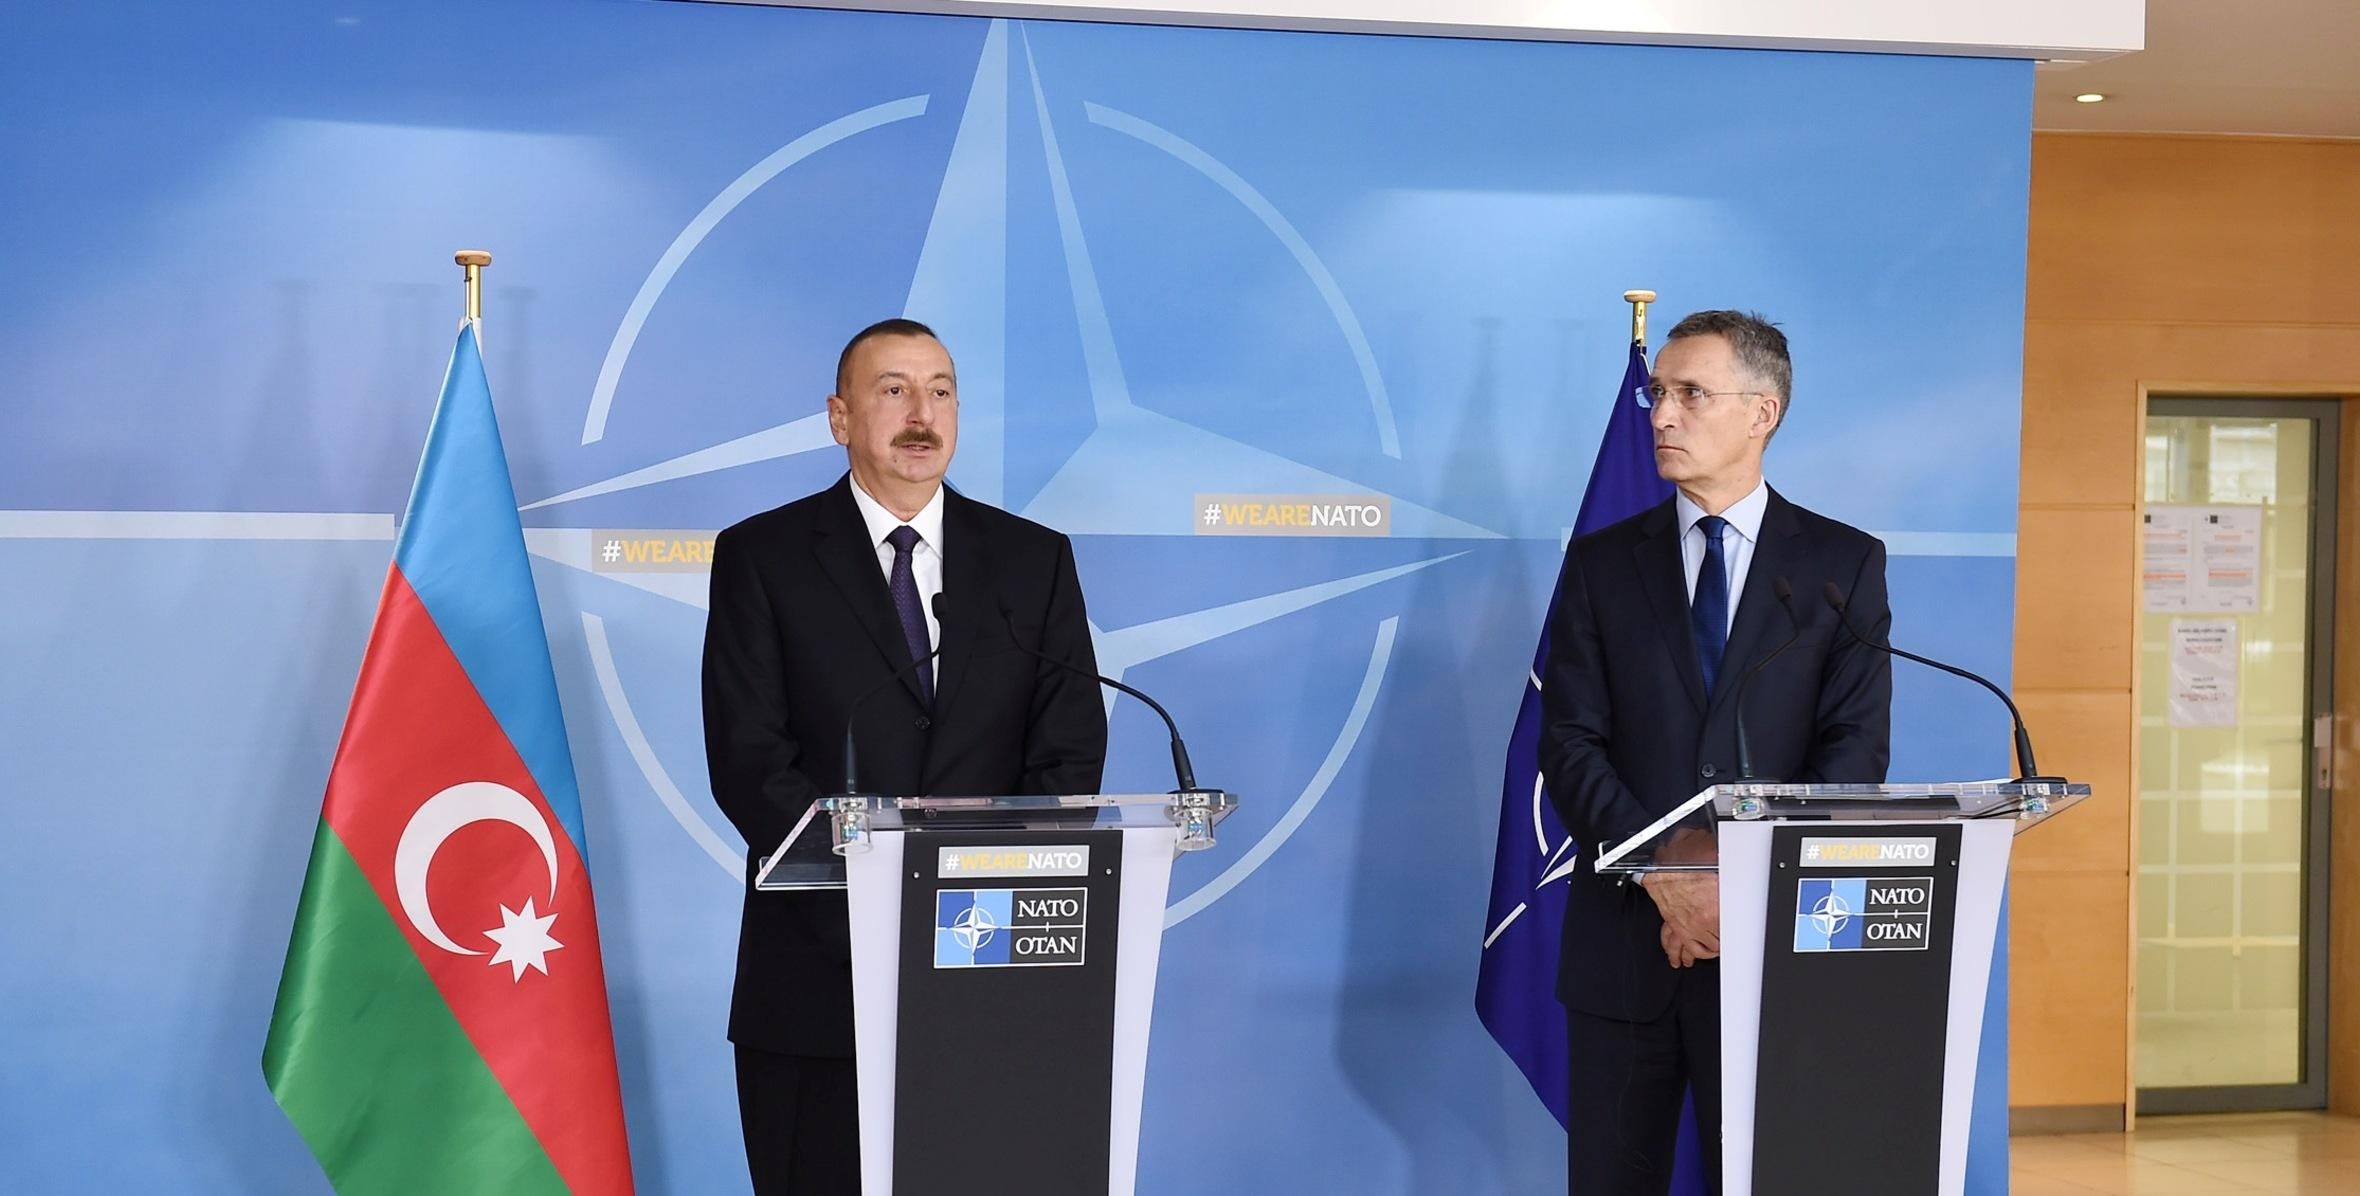 Азербайджан фактически член НАТО, – Пионтковский напомнил интересную деталь